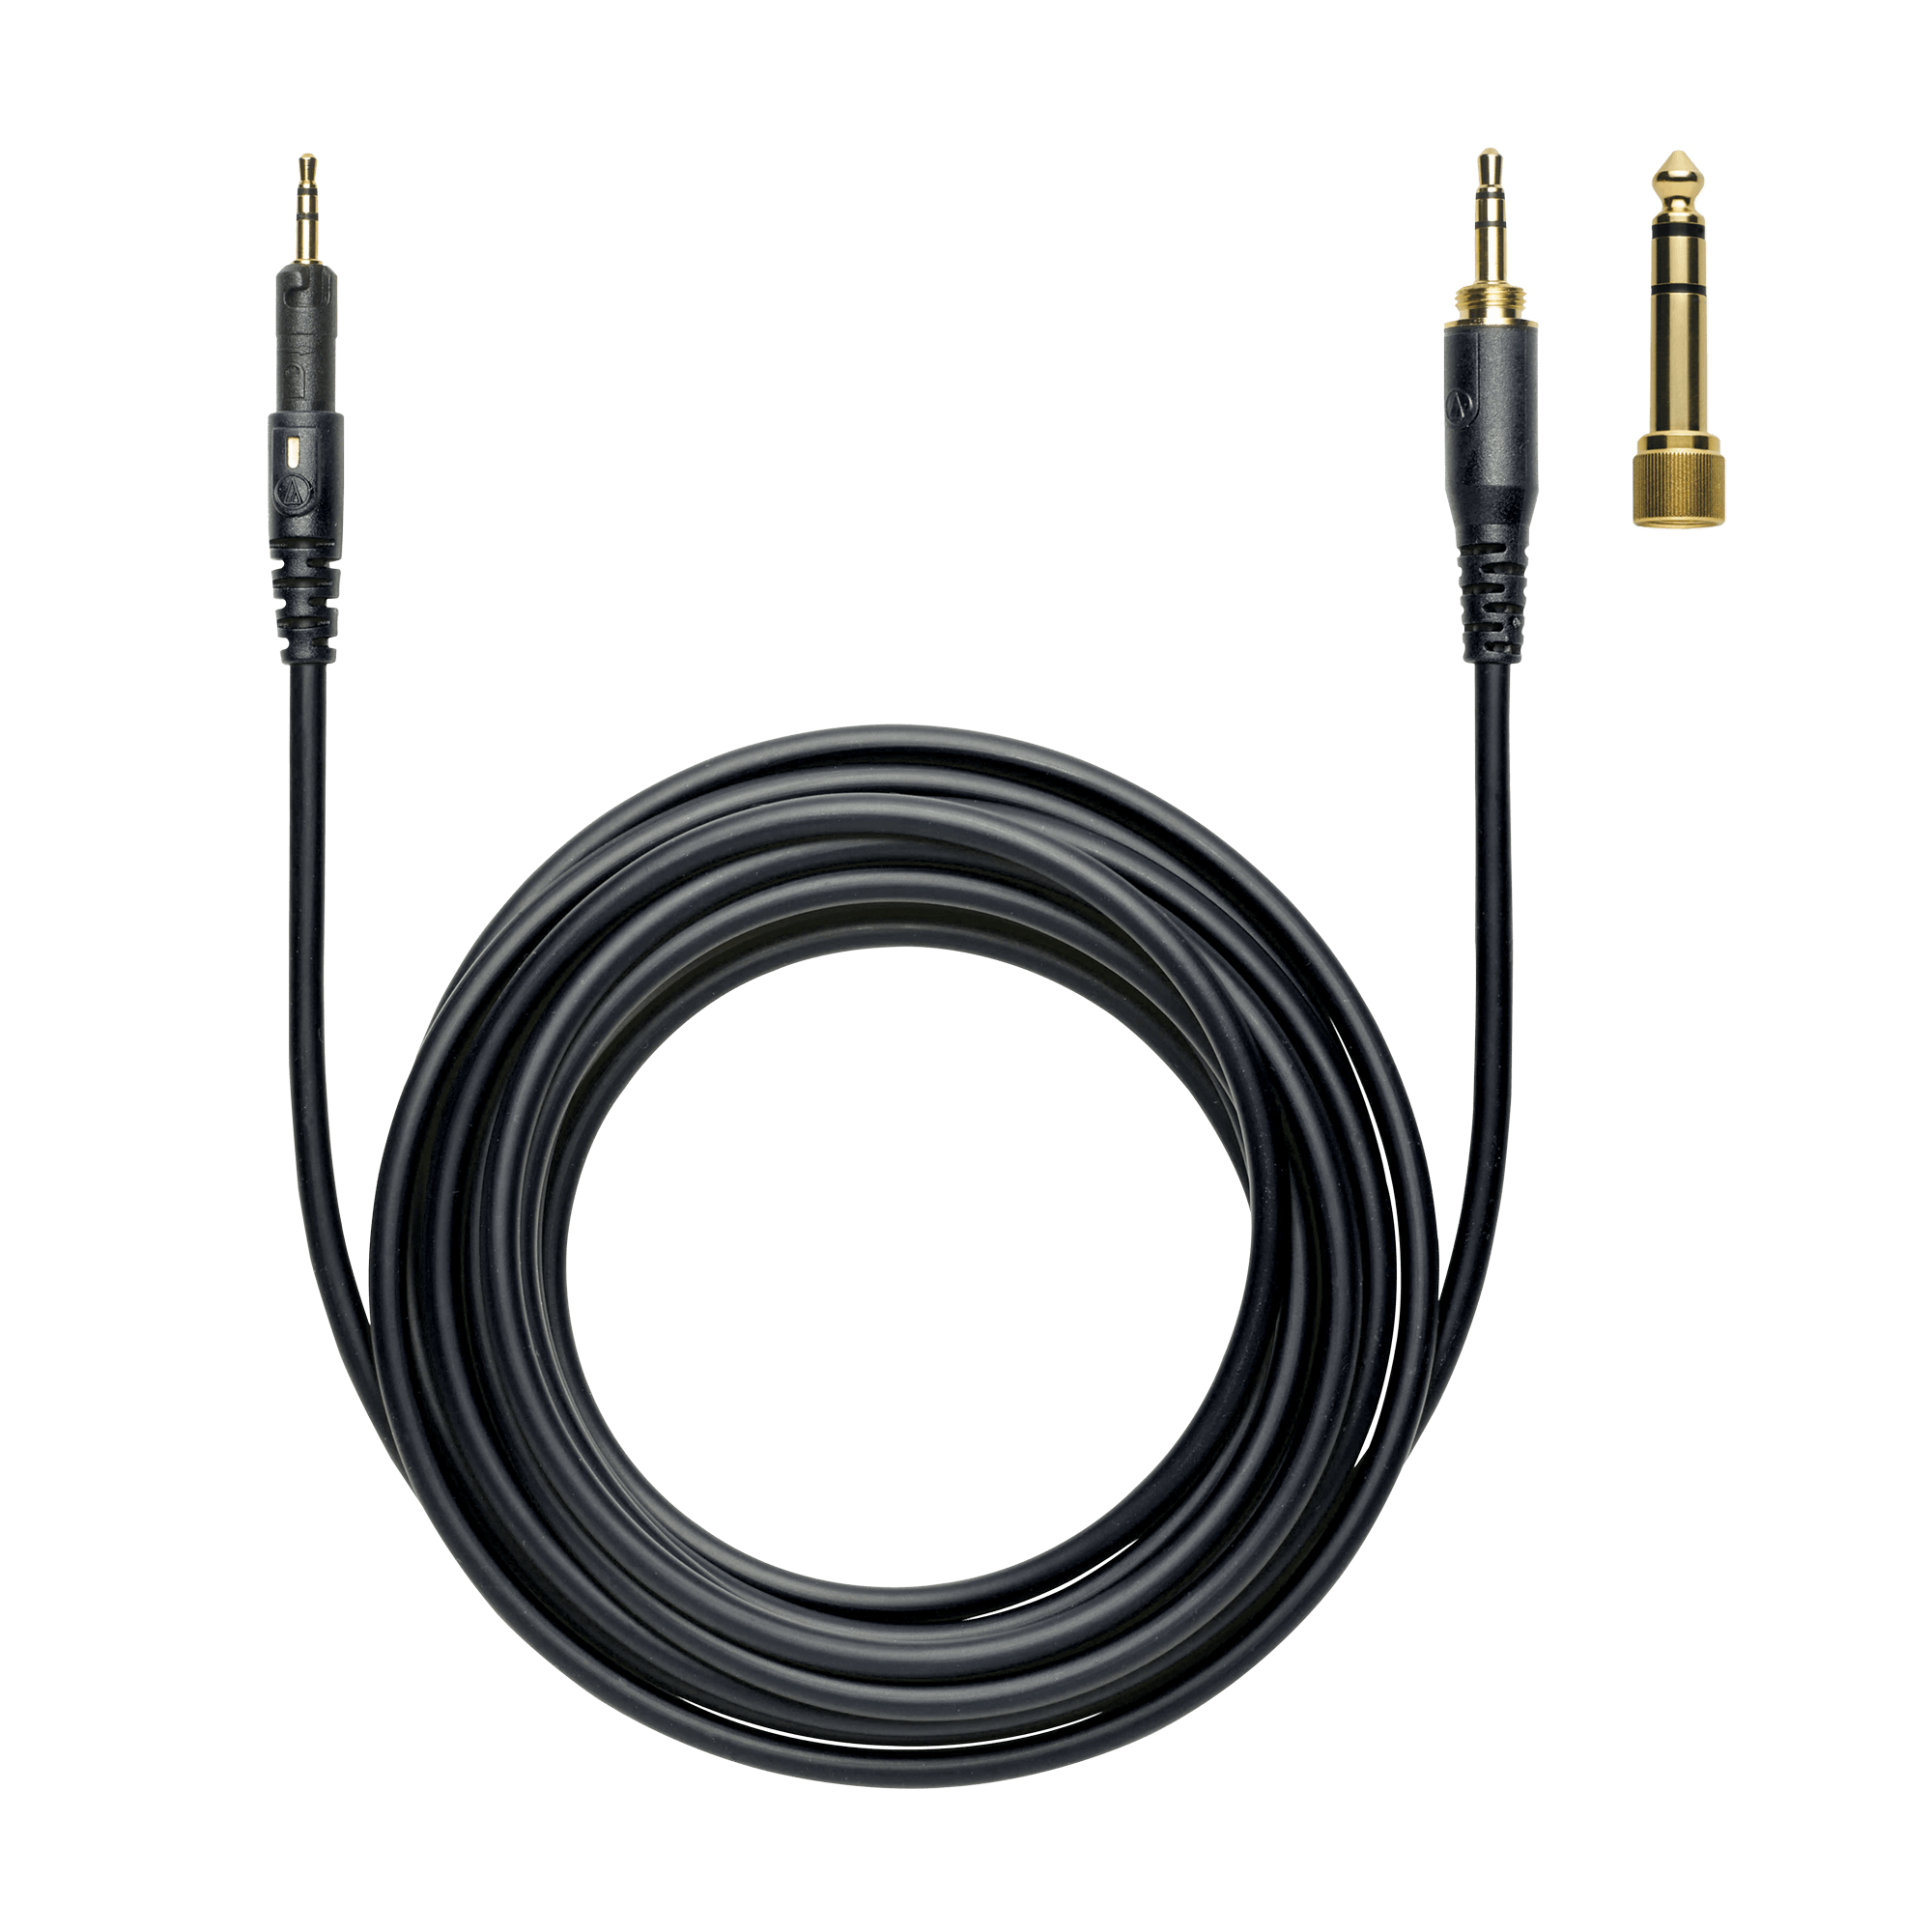 Audio-Technica ATH-M60X Auriculares de estudio+amplificador de auriculares  Samson de 4 canales